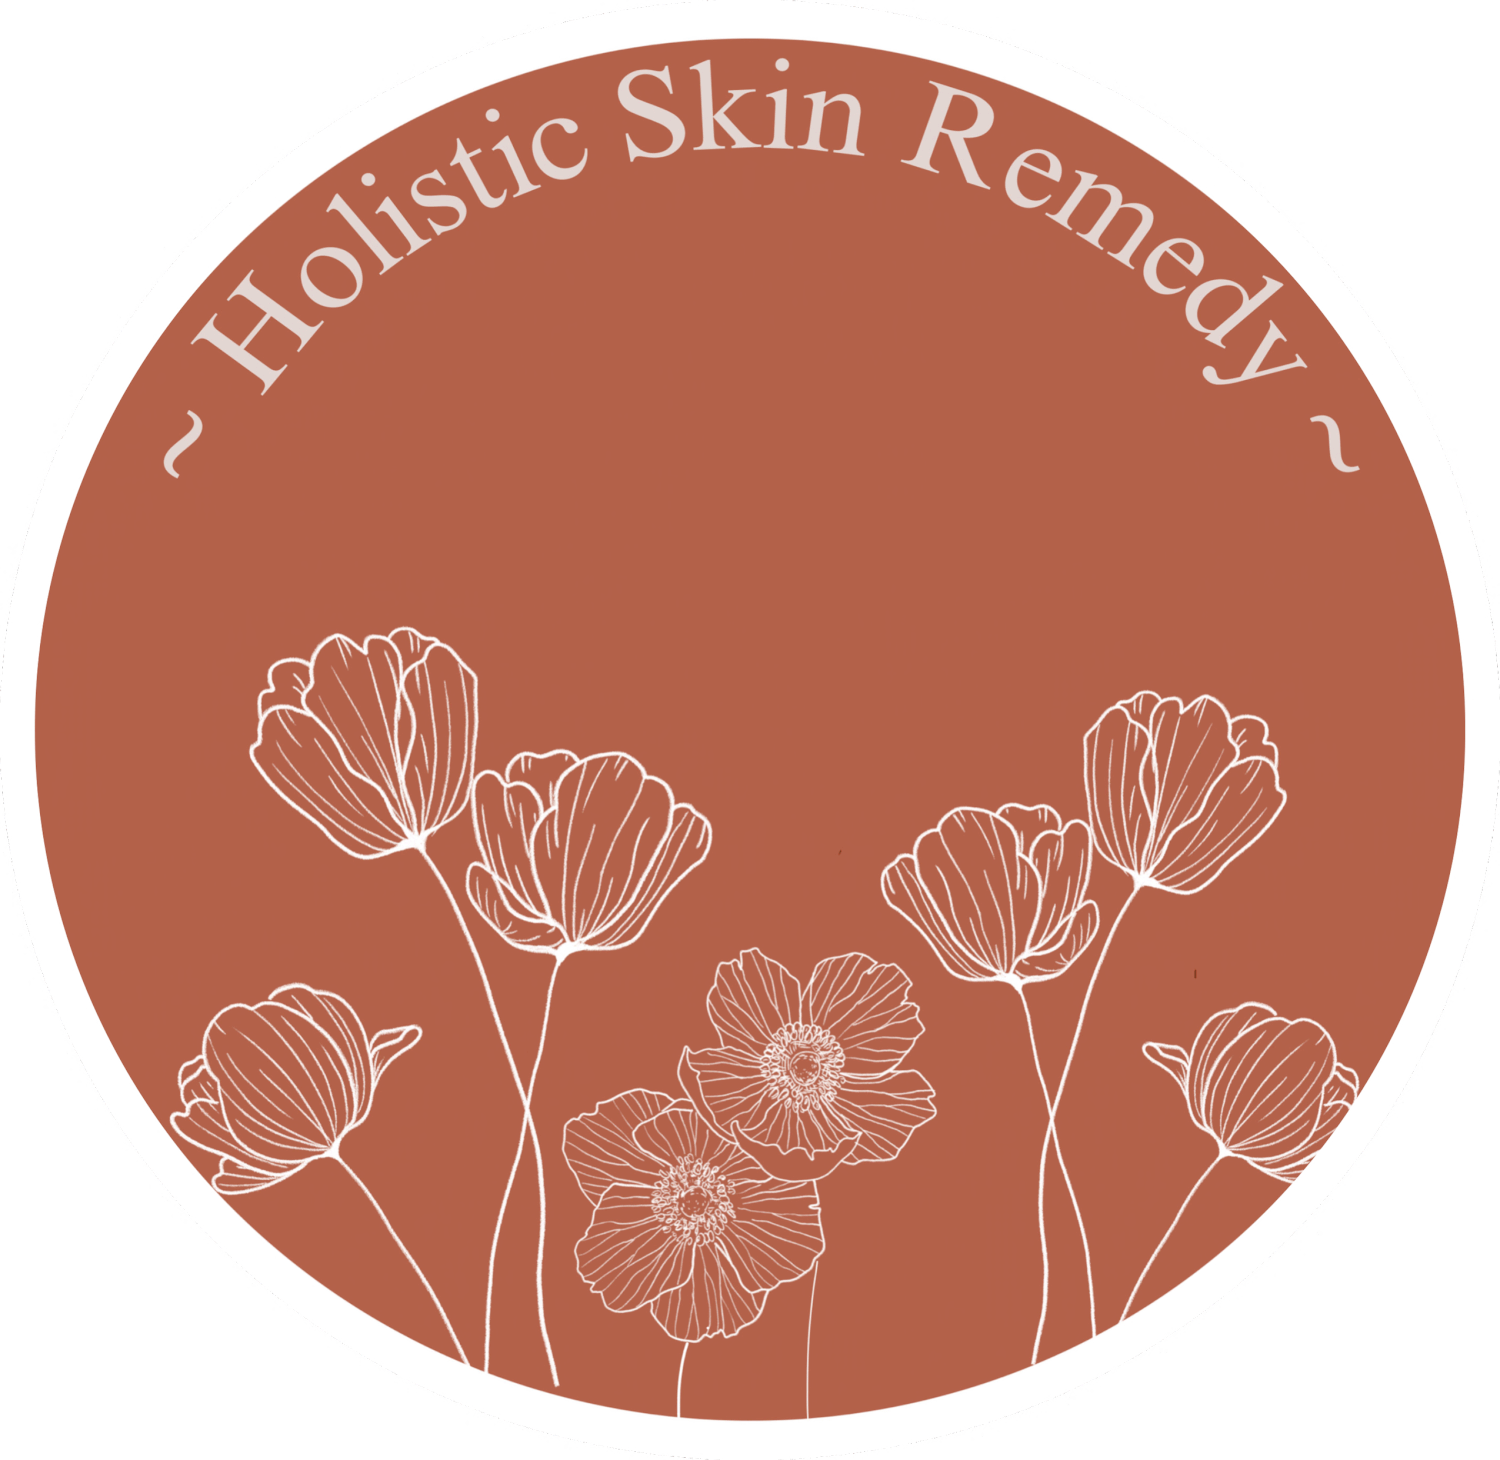 Holistic Skin Remedy